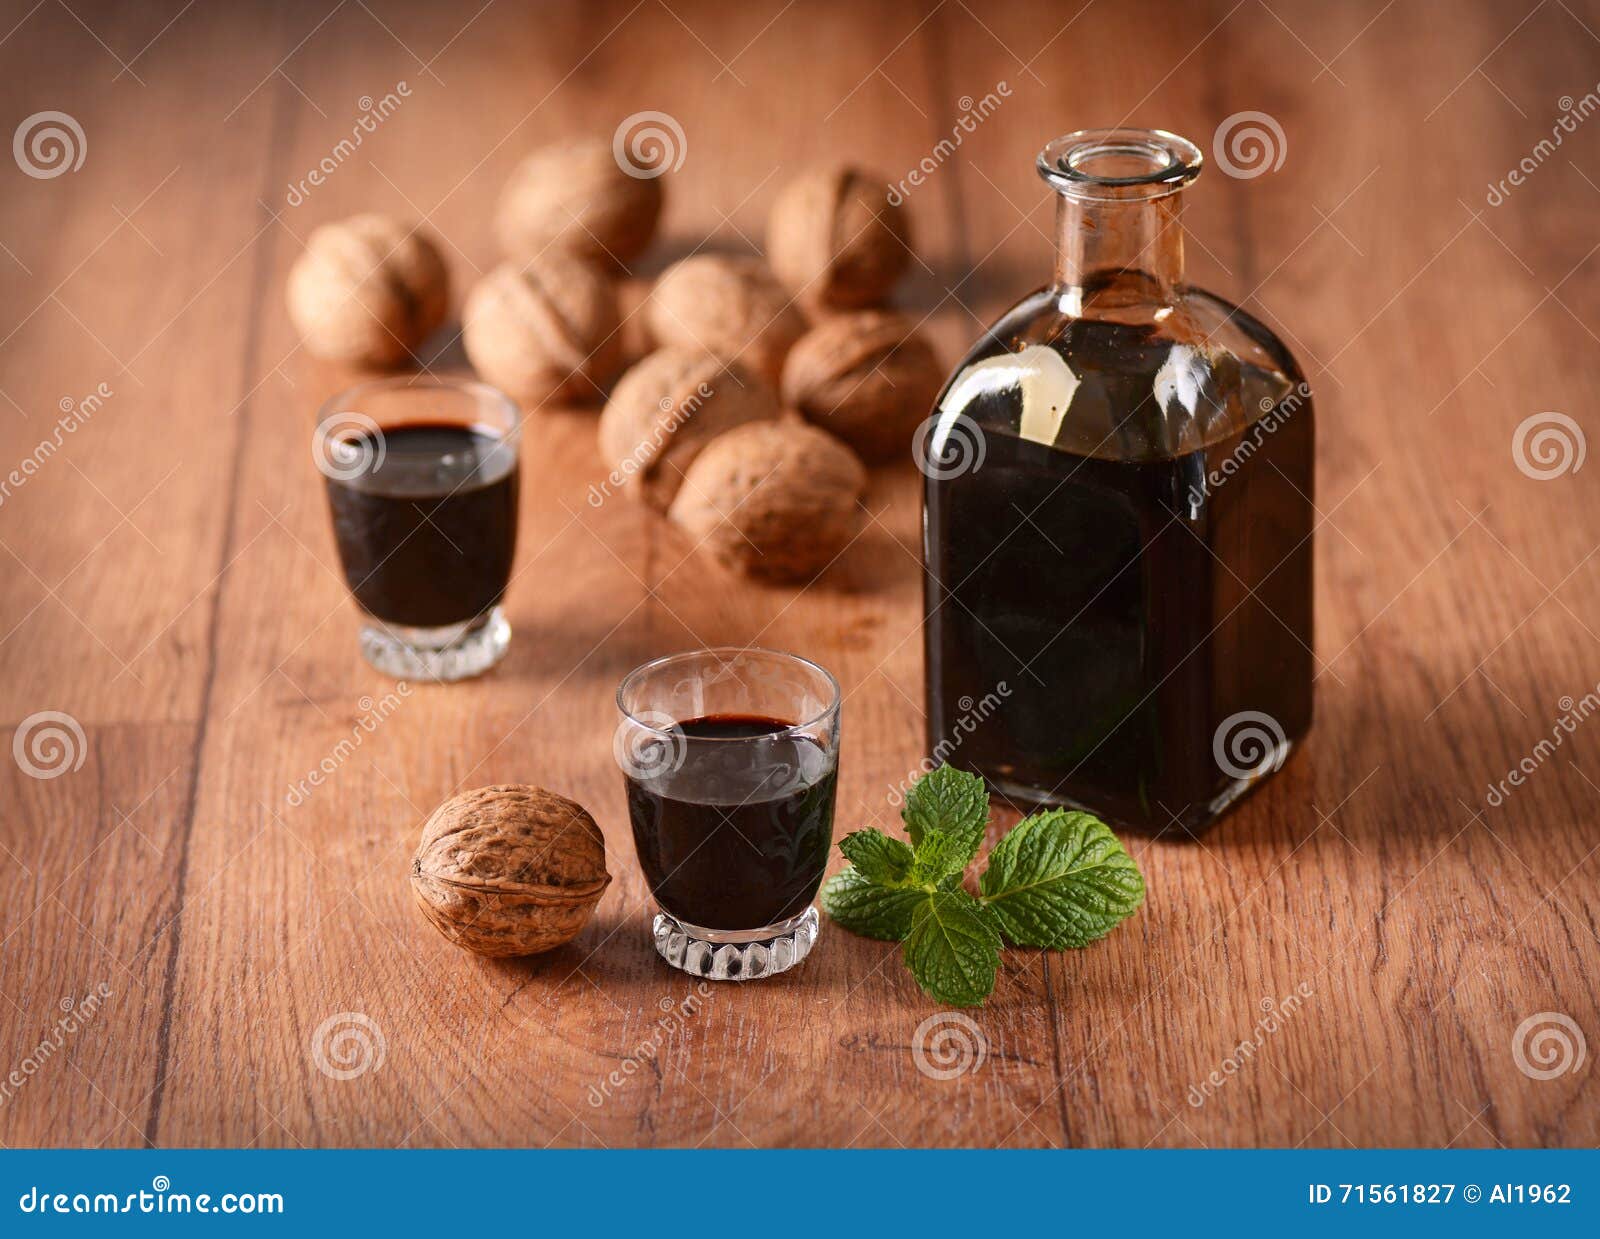 walnut liqueur in the bottle